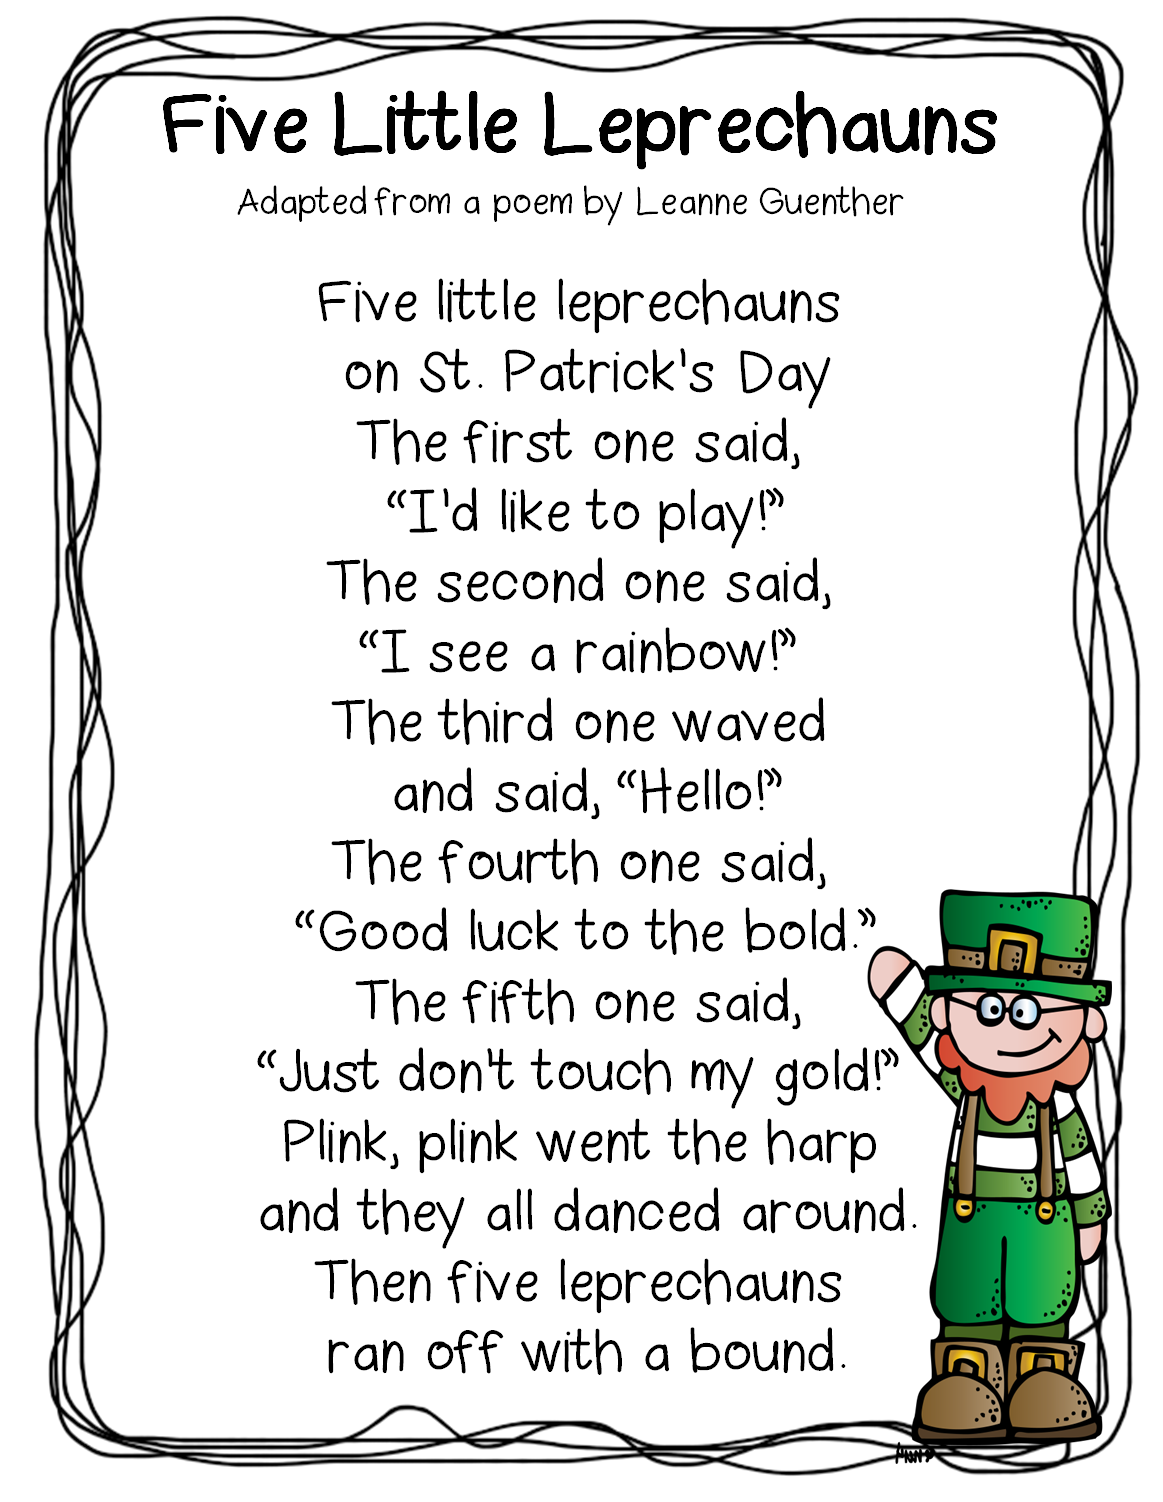 LEARNING TOGETHER: Five Little Leprechauns poem